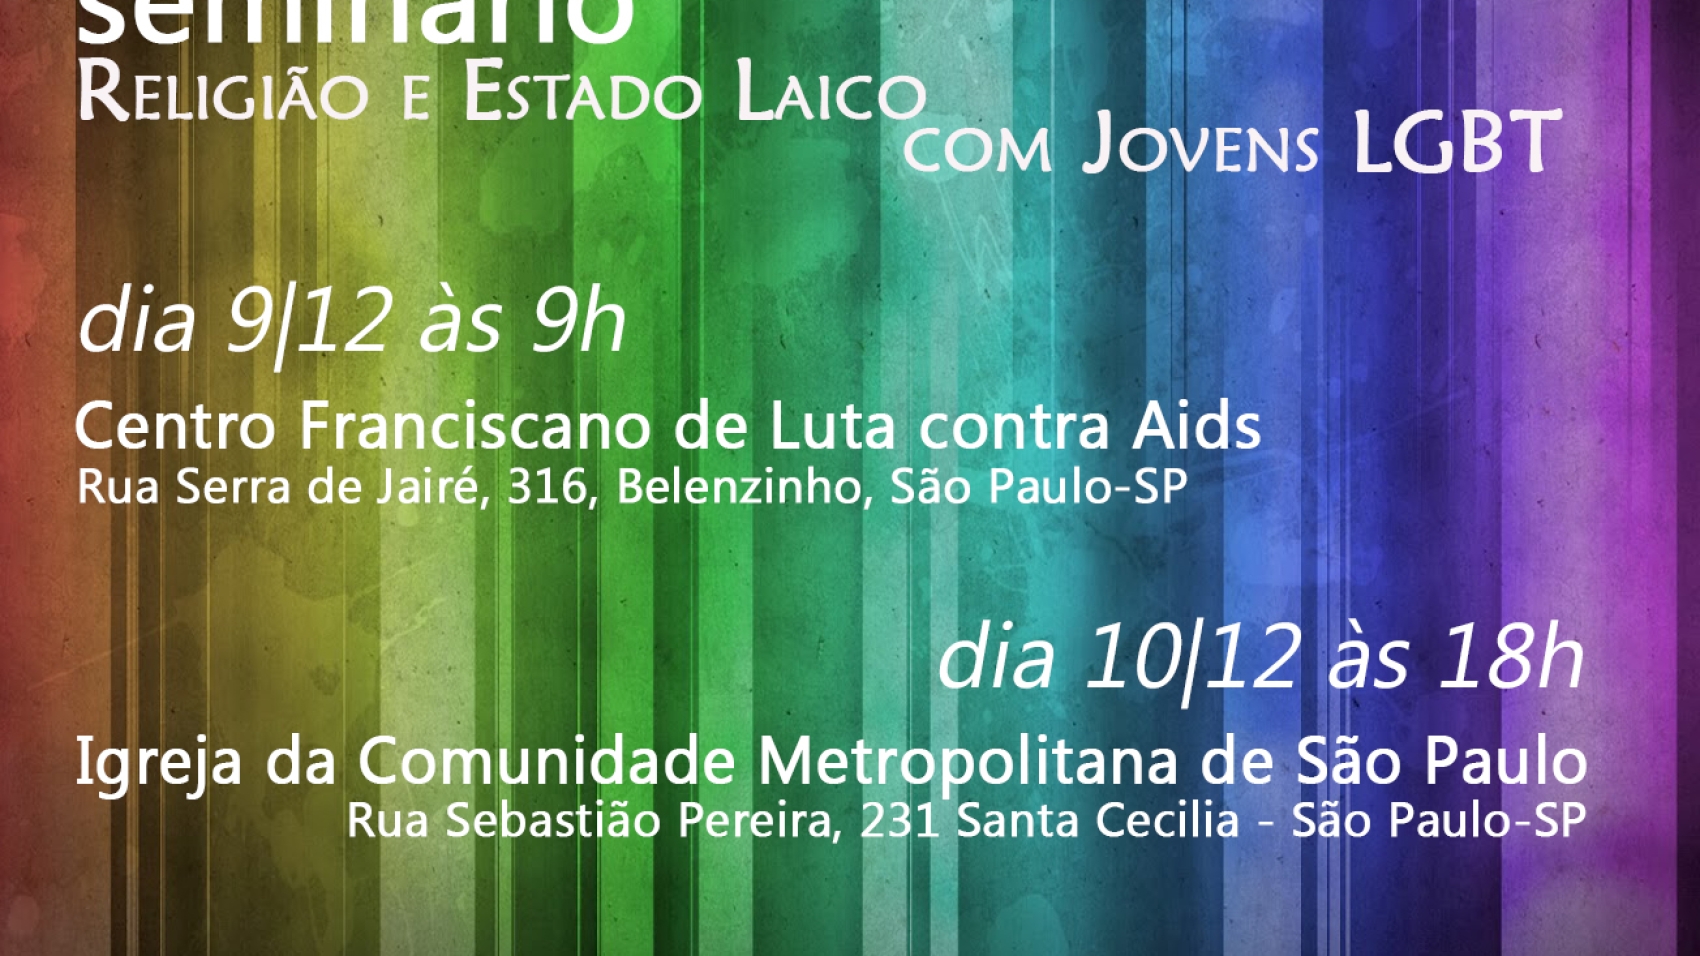 Convite Estado Laico, Religião e Jovens LGBT